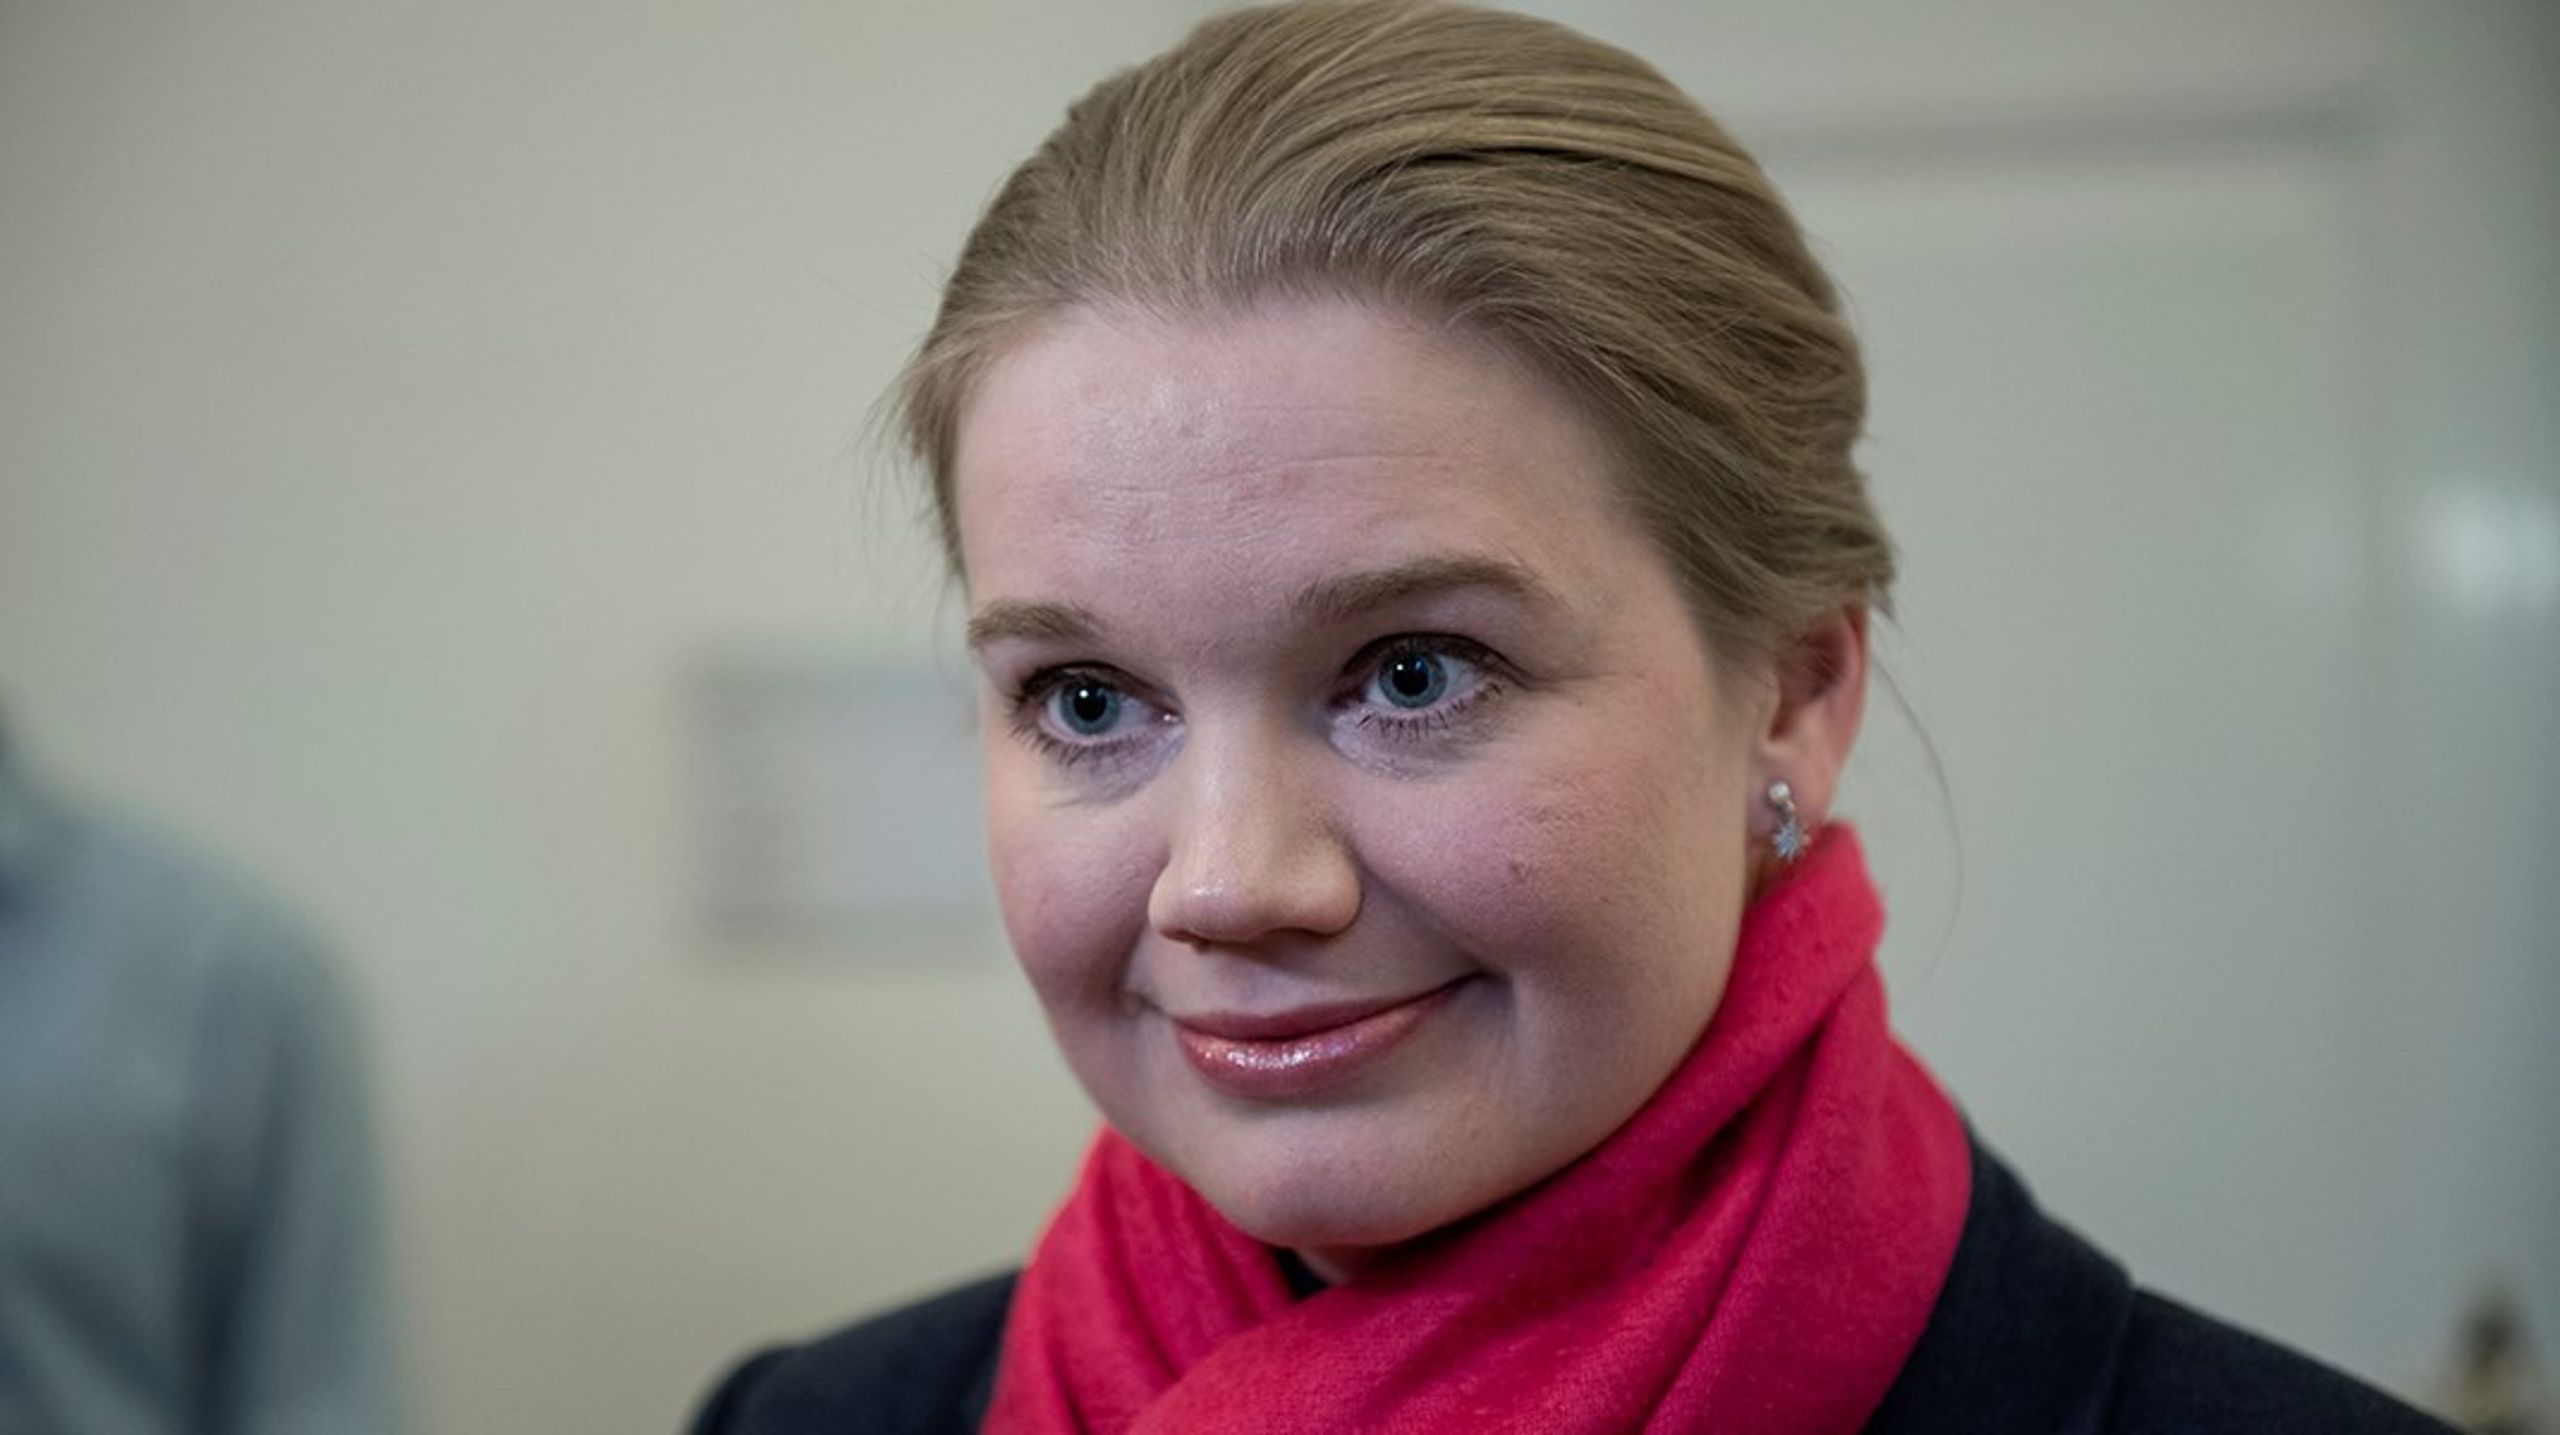 Danmarksdemokraterne arbejder hårdt for at skærpe krav til faste teams i de verserende ældreforhandlinger. Men partiets ældreordfører Marlene Harpsøe afviser at stille det som ultimativt krav.